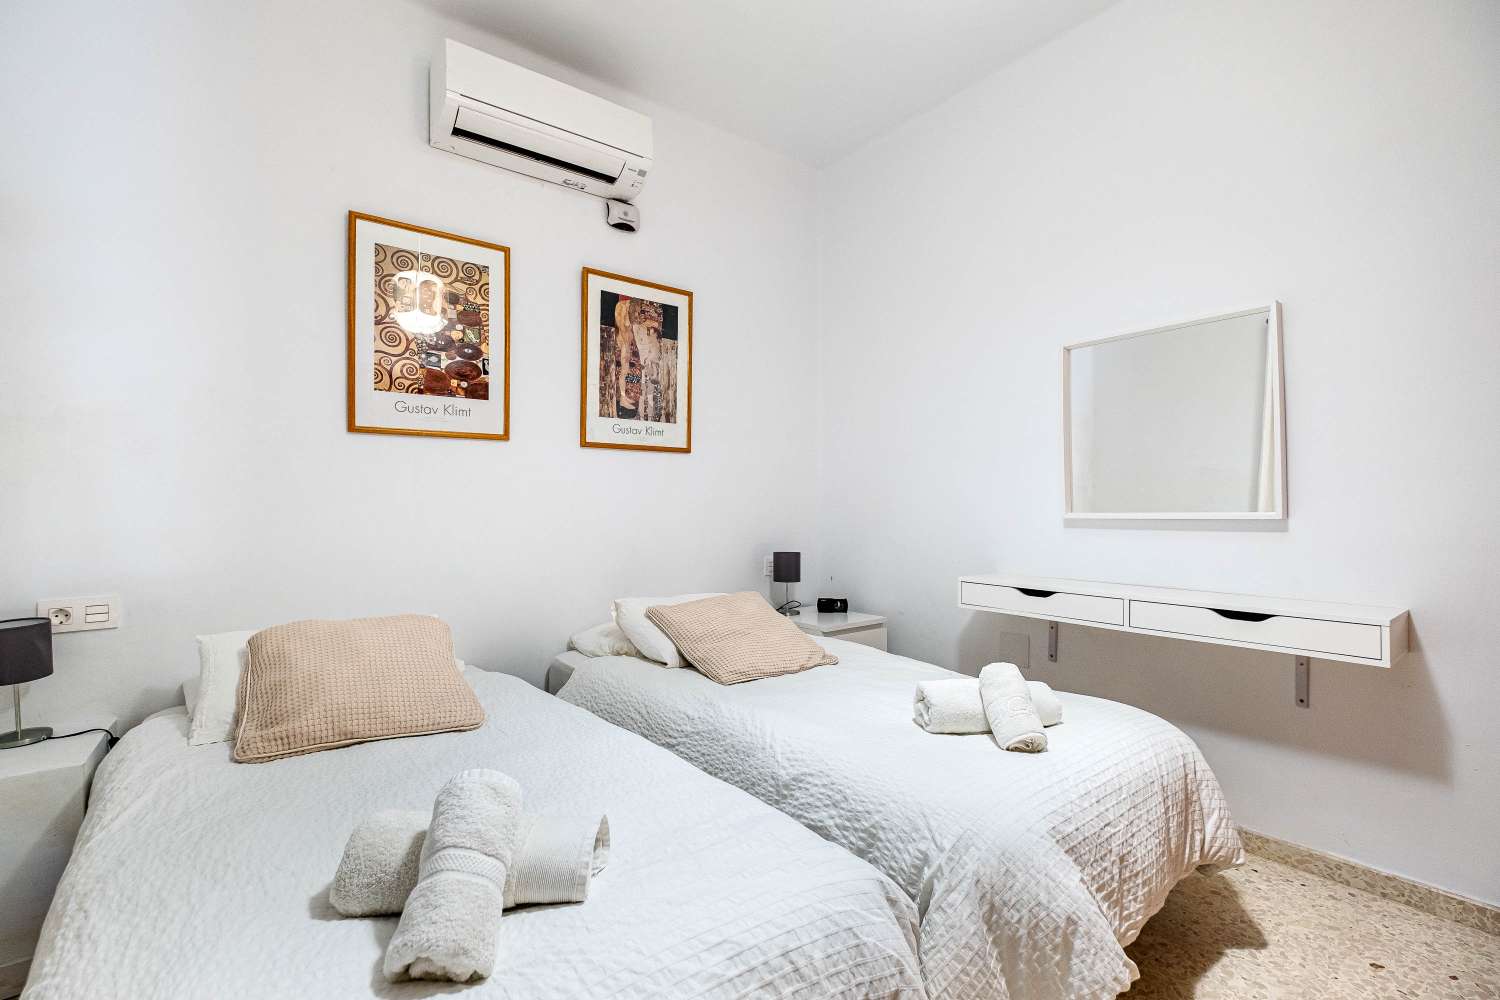 Capistrano Playa - Onlangs gerenoveerd appartement met 2 slaapkamers